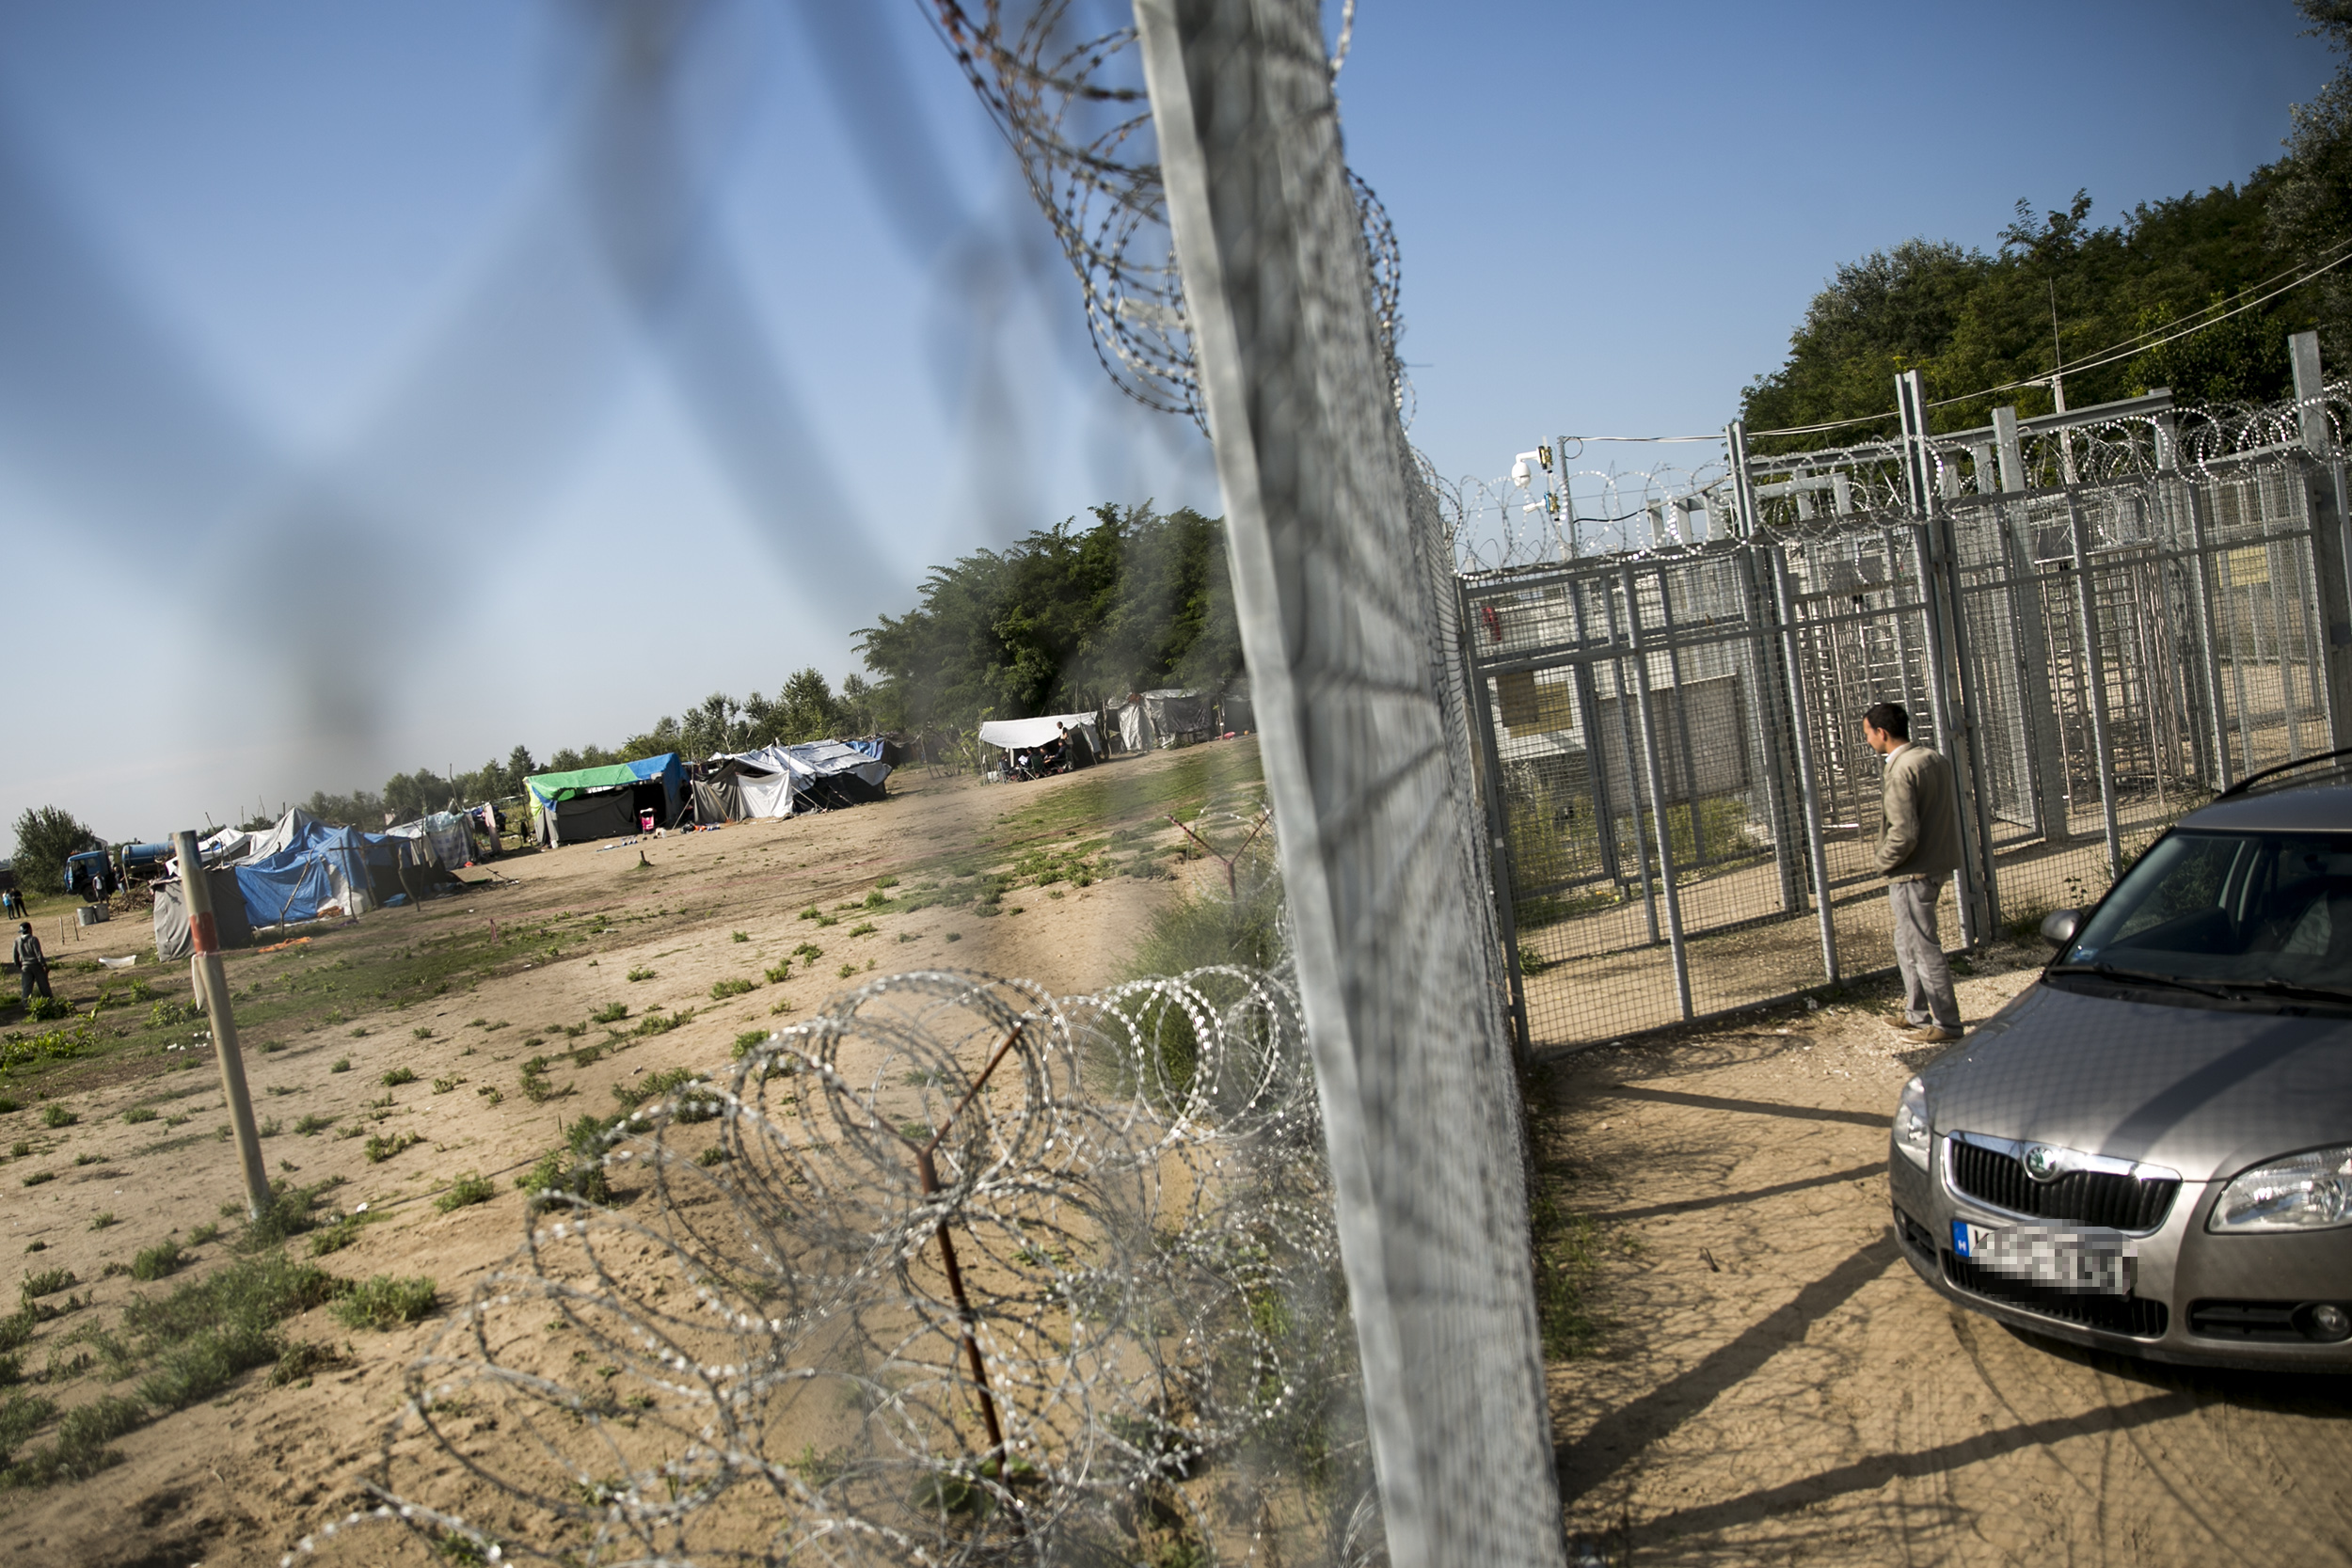 A strasbourgi bíróság kimondta, hogy Magyarország megsértette három szíriai menedékkérő emberi jogait